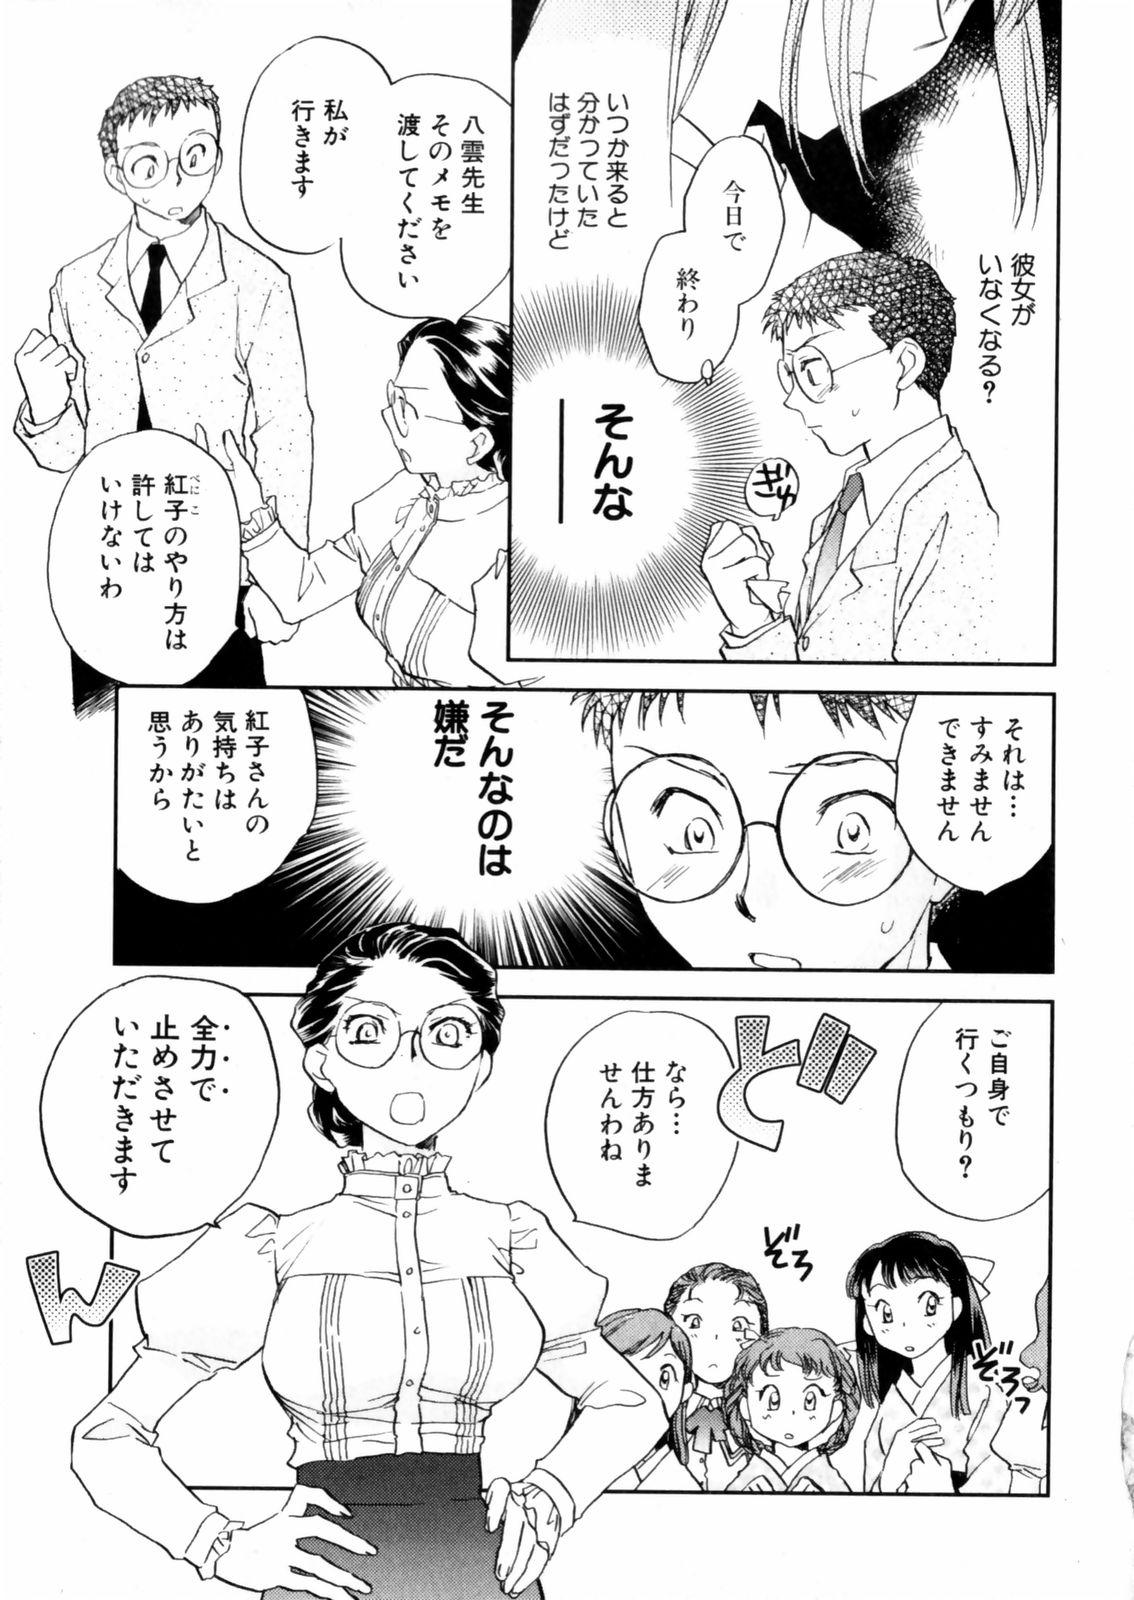 [Okano Ahiru] Hanasake ! Otome Juku (Otome Private Tutoring School) Vol.2 72